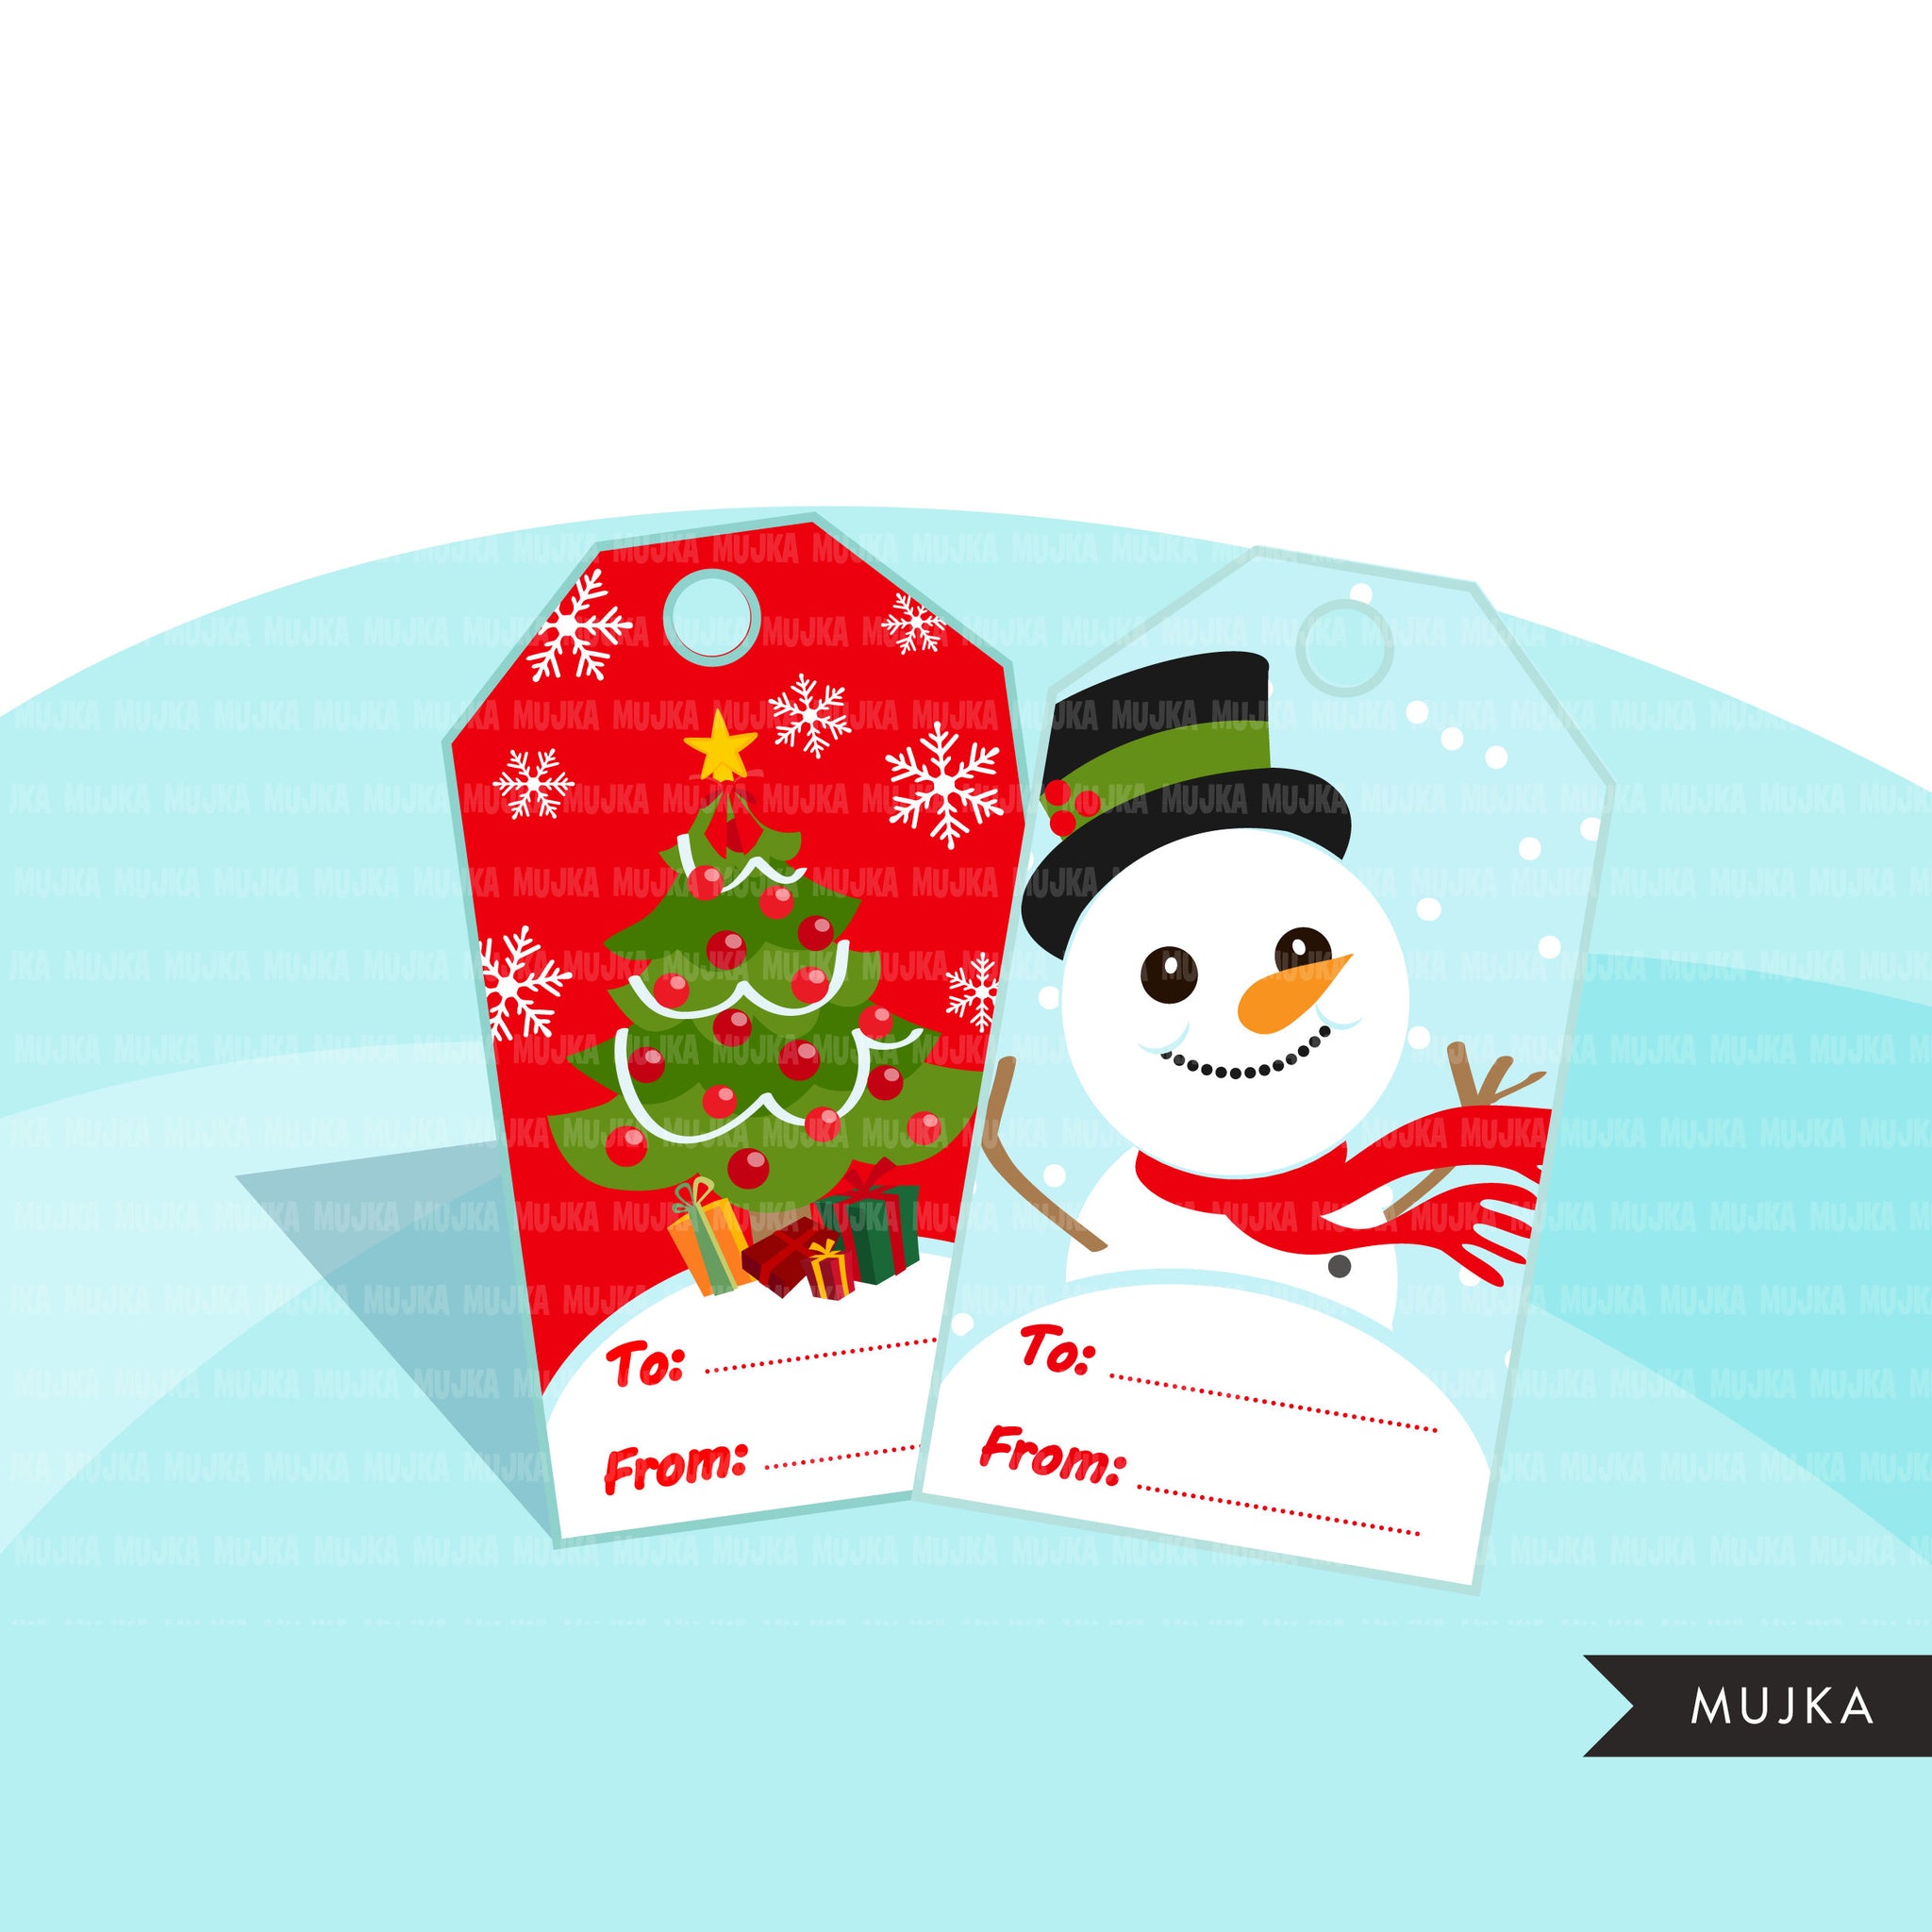 Printable Christmas gift tags, Christmas gift tags clipart, Noel